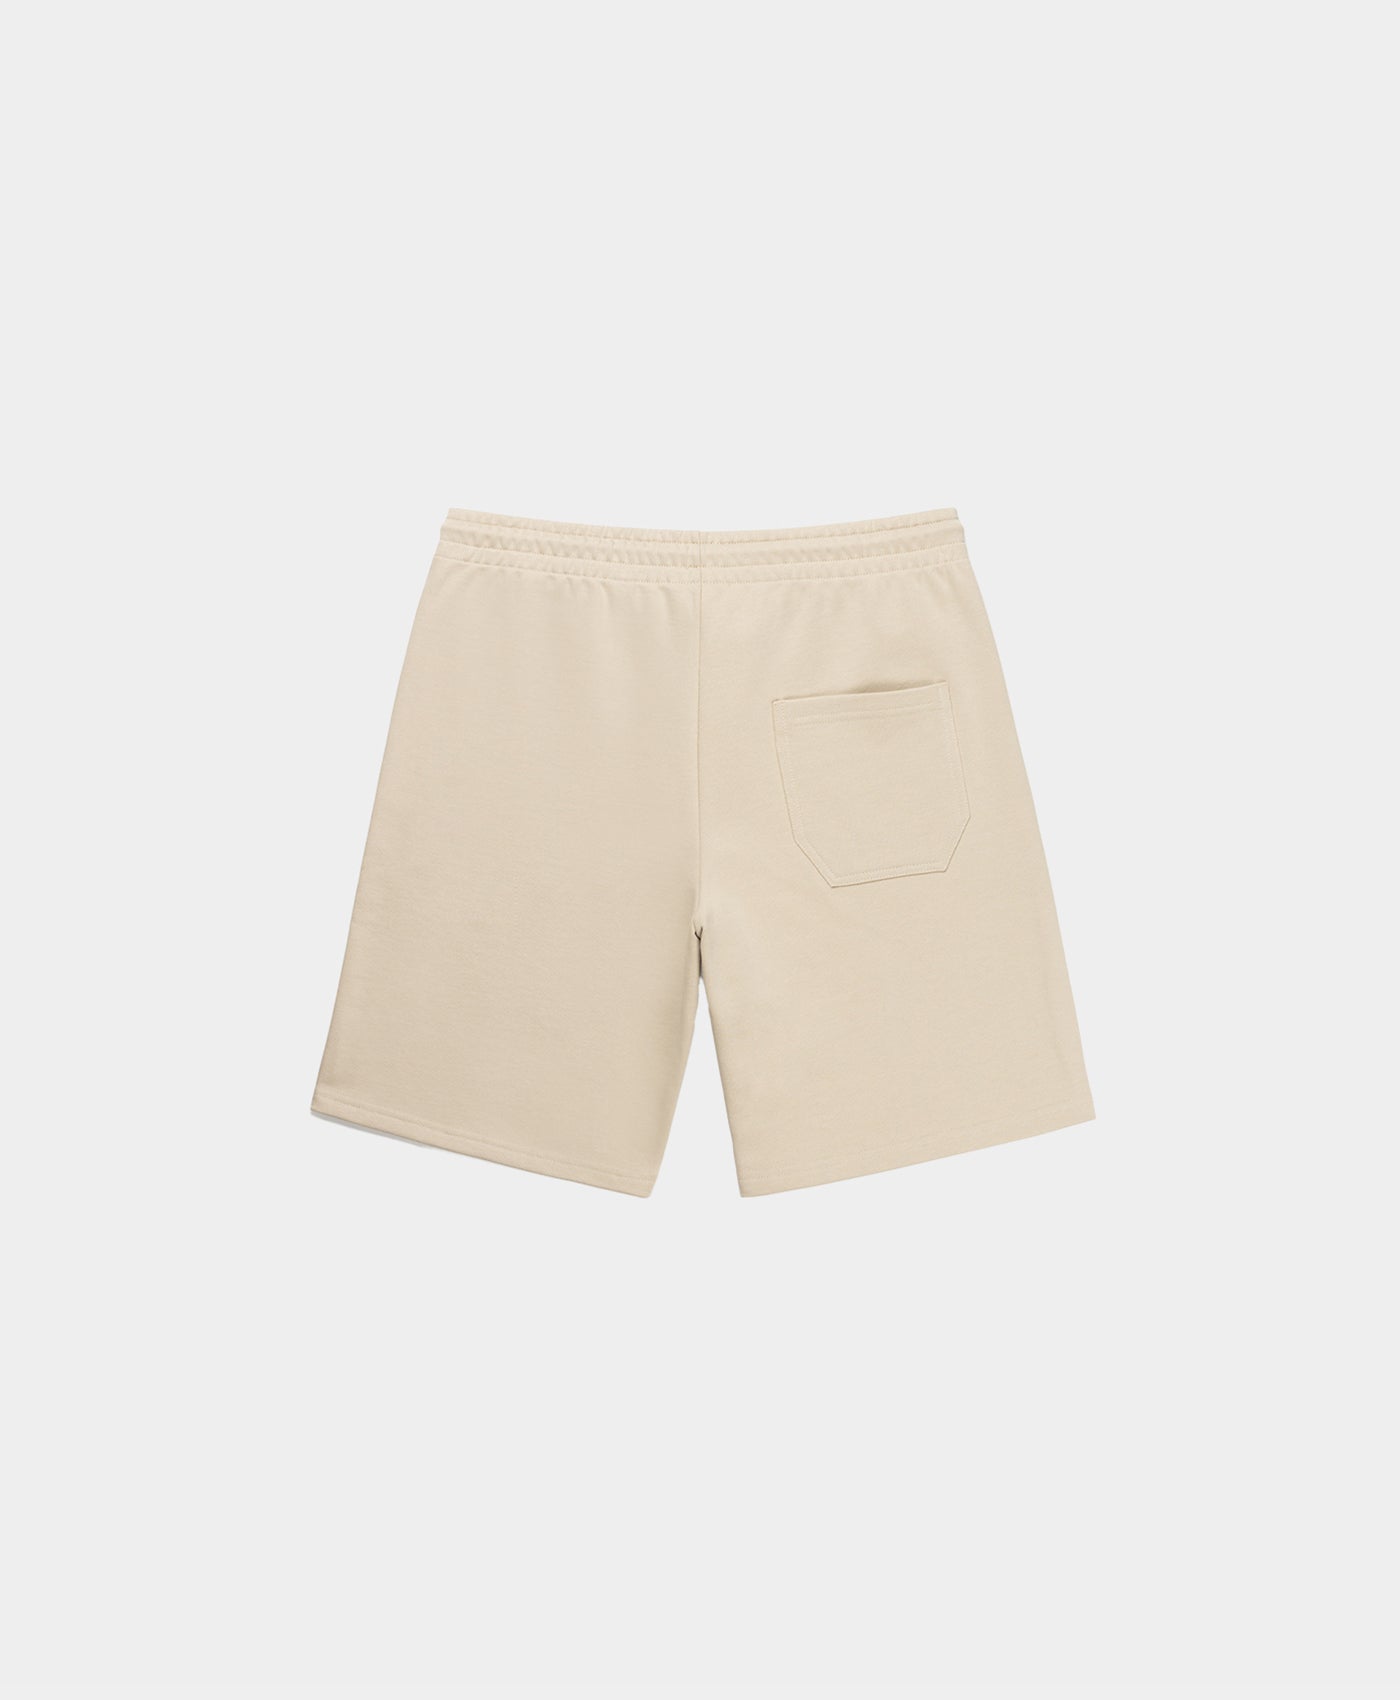 DP - Beige Refarid Shorts - Packshot - Rear